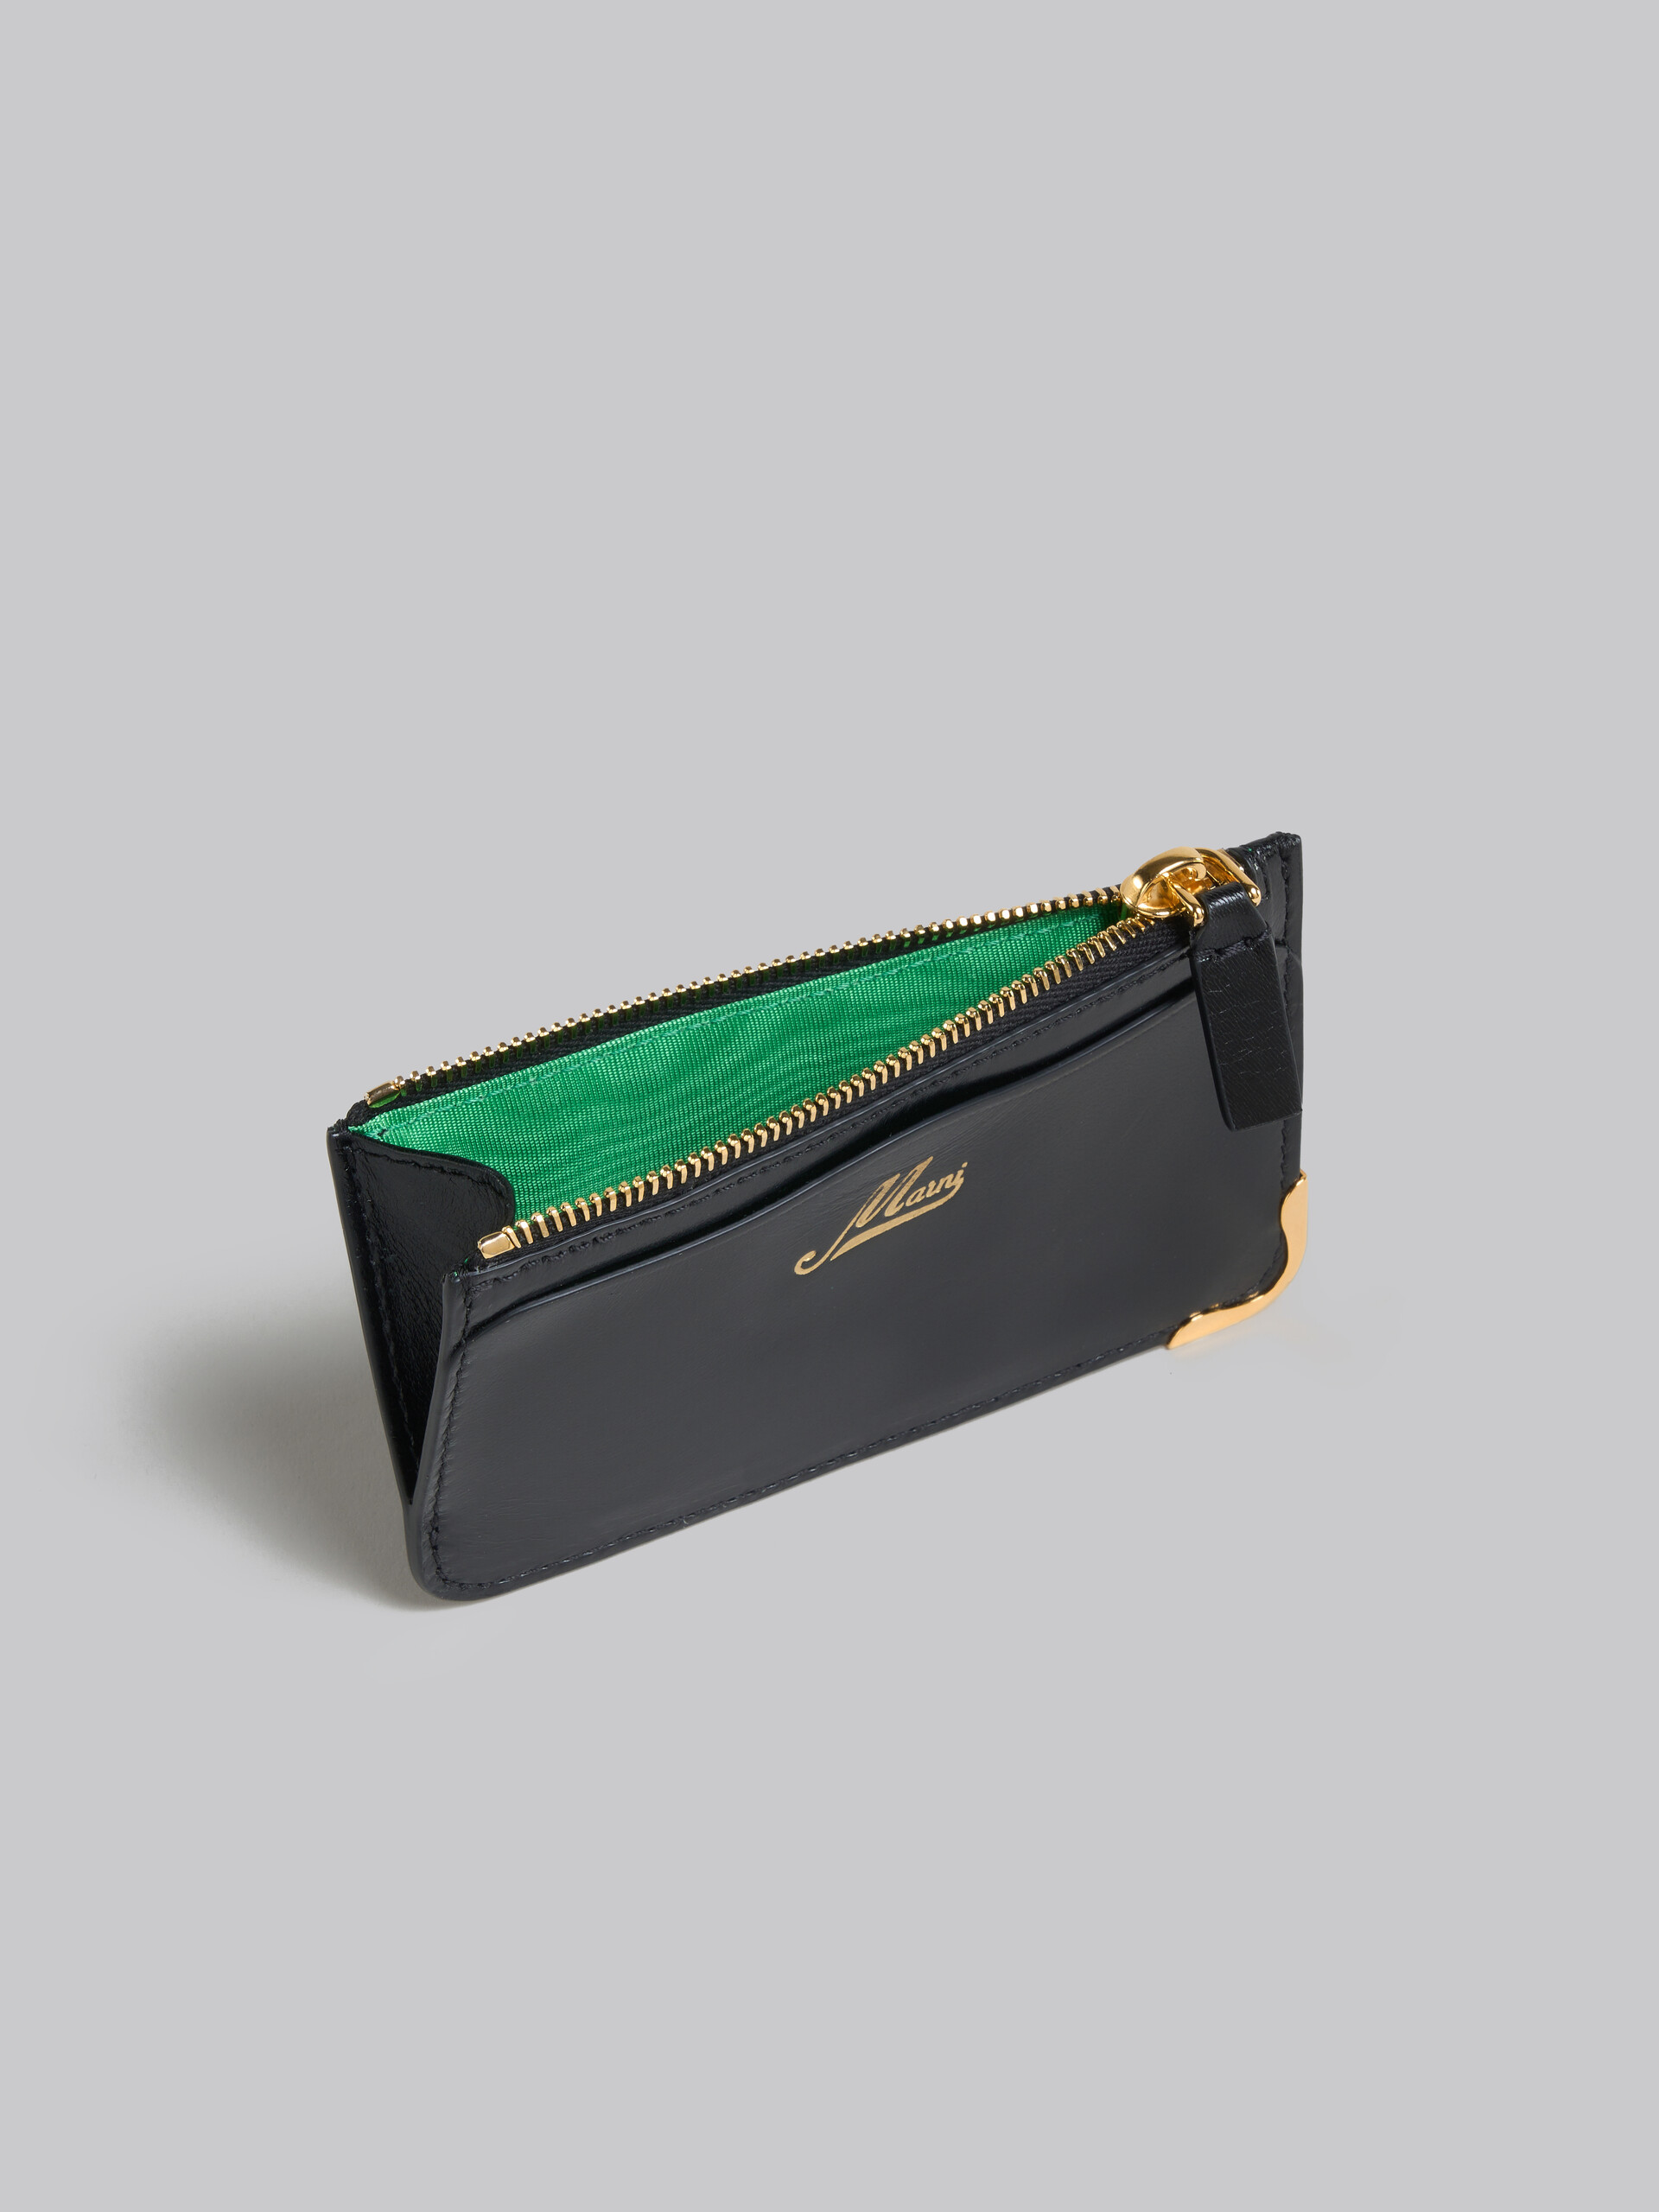 Schwarzes Lederportemonnaie mit wellenförmigen Fächern - Brieftaschen - Image 2